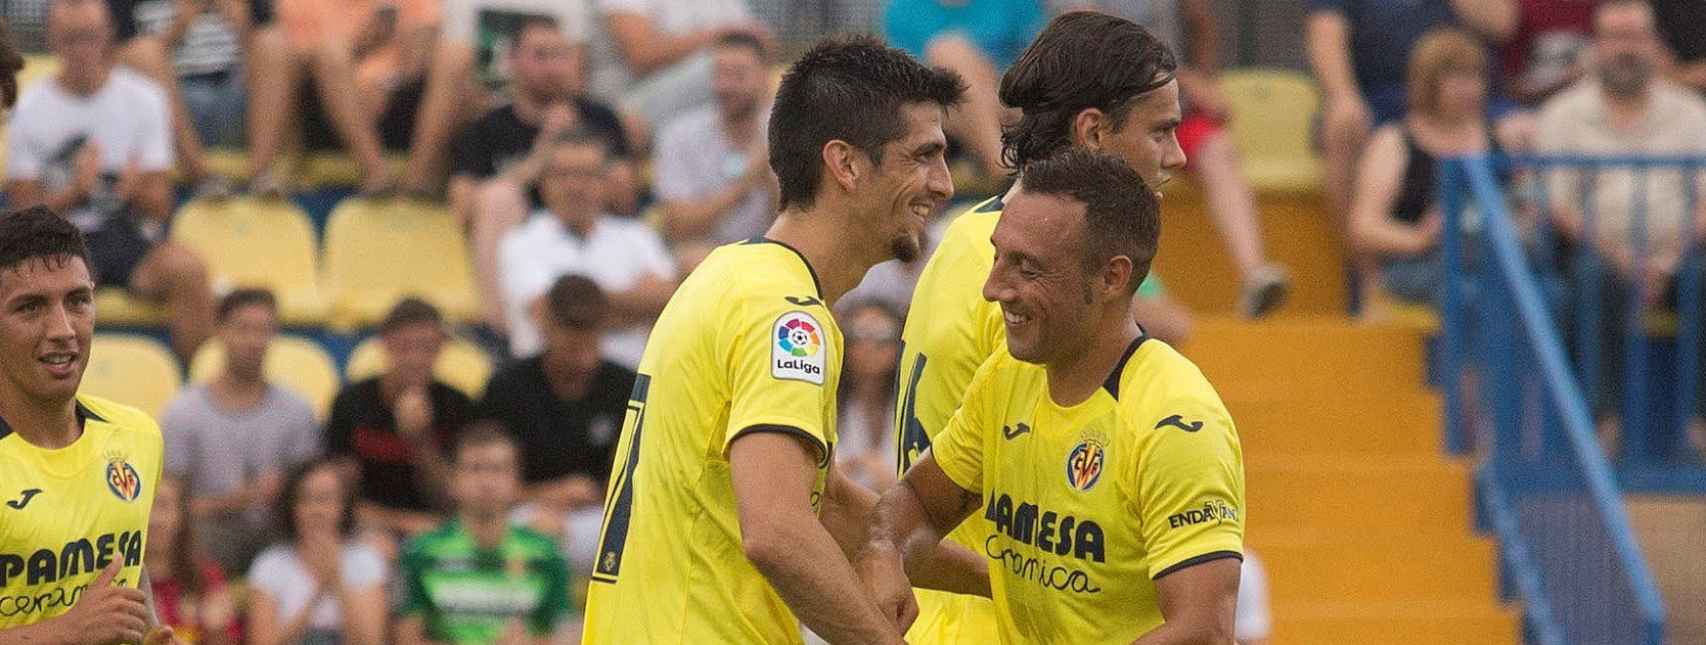 Los jugadores del Villarreal celebran un gol